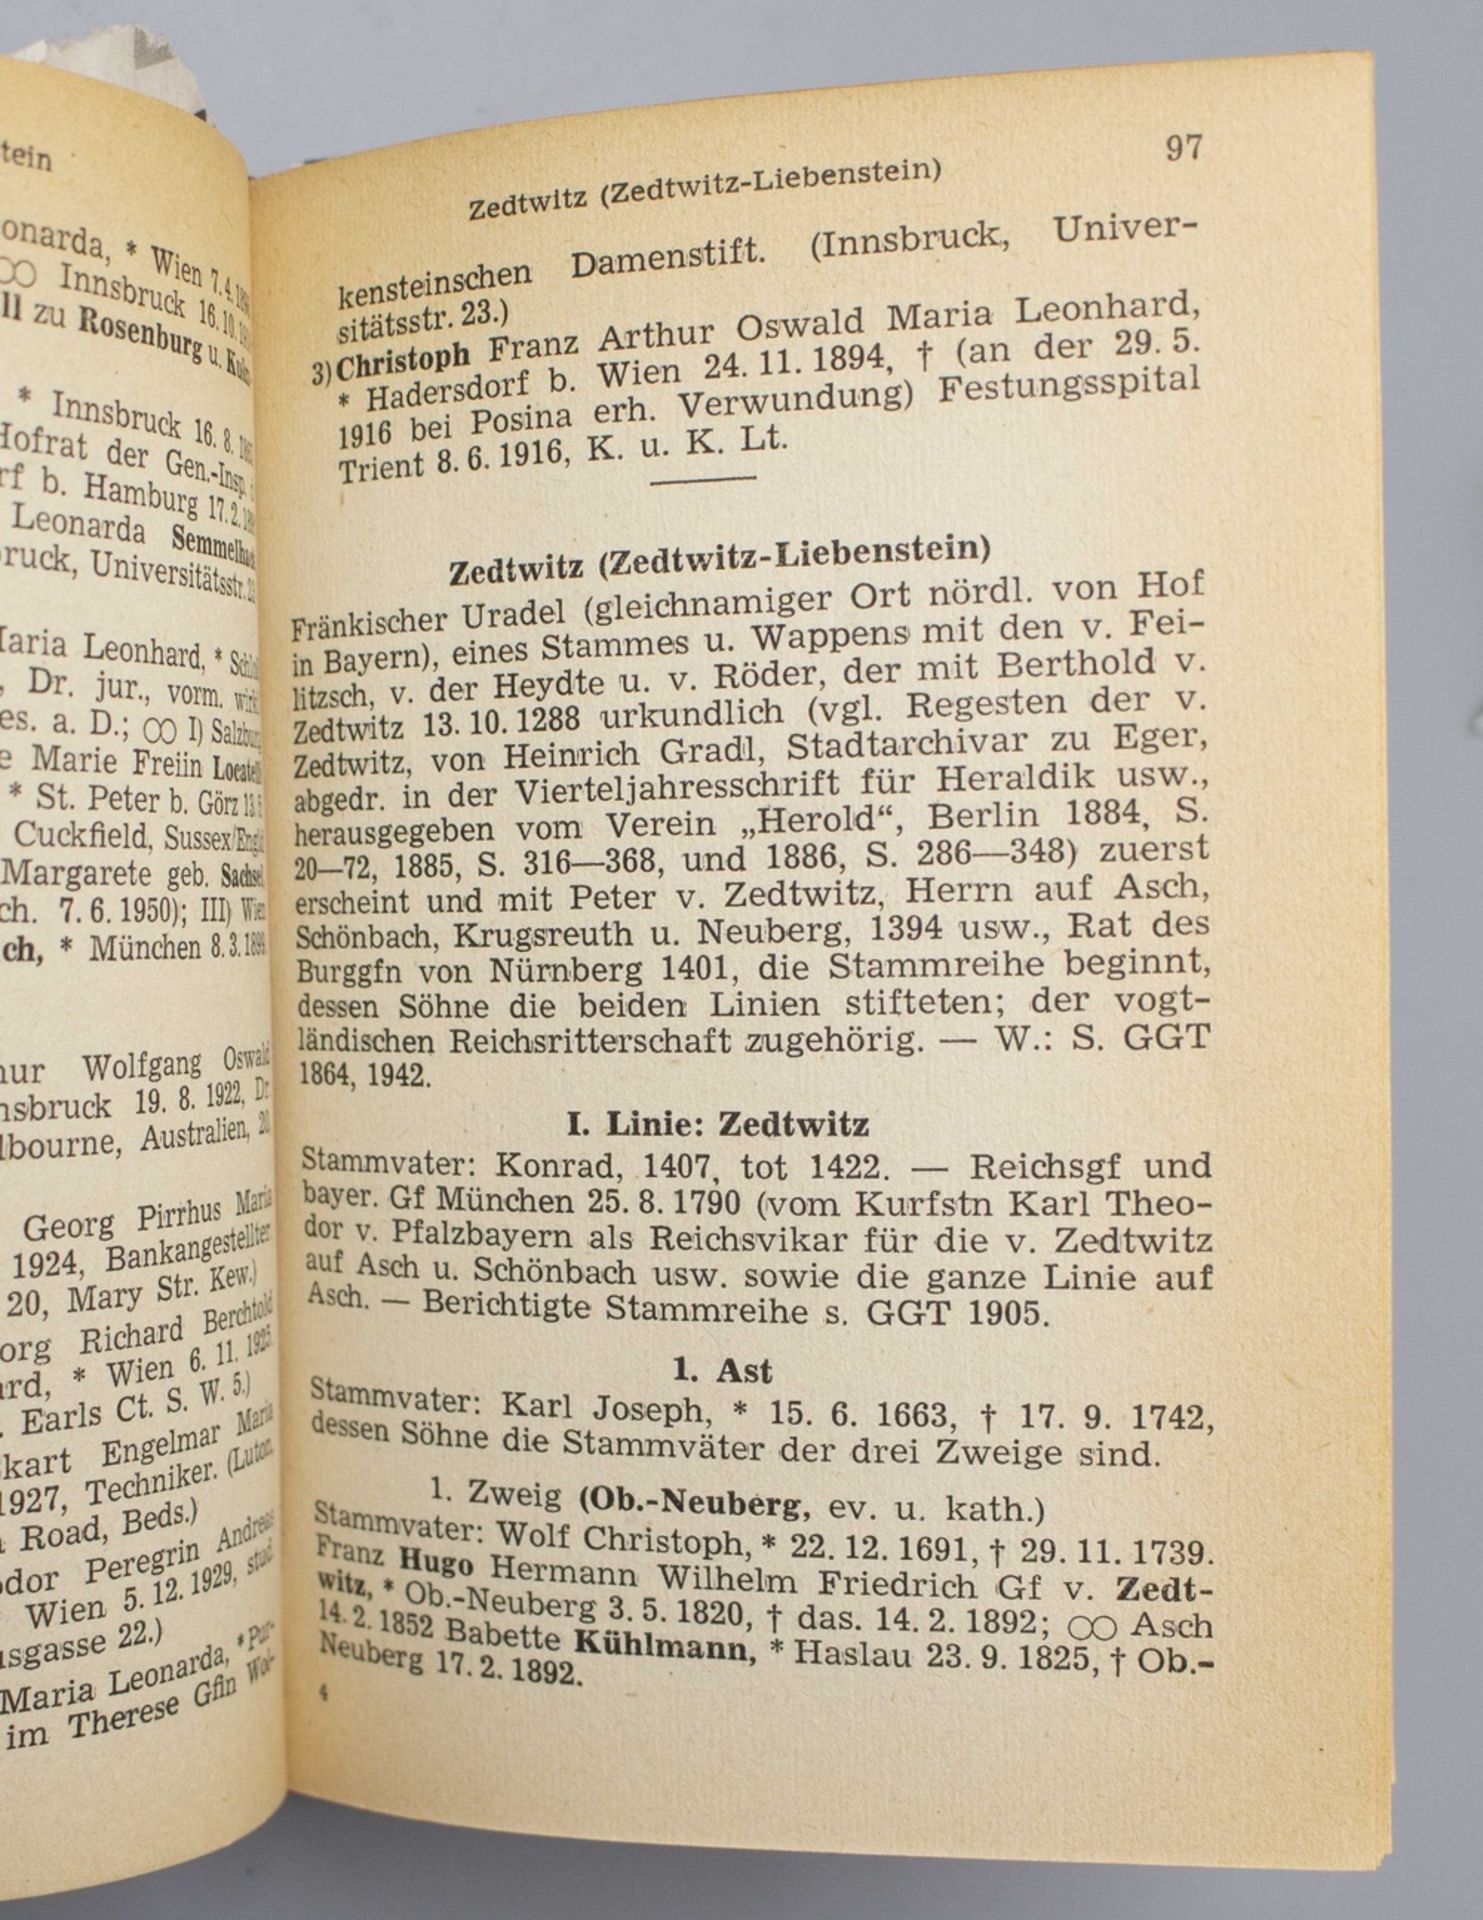 Genealogisches Handbuch des in Bayern immatrikulierten Adels, 1950-1952 - Image 5 of 6